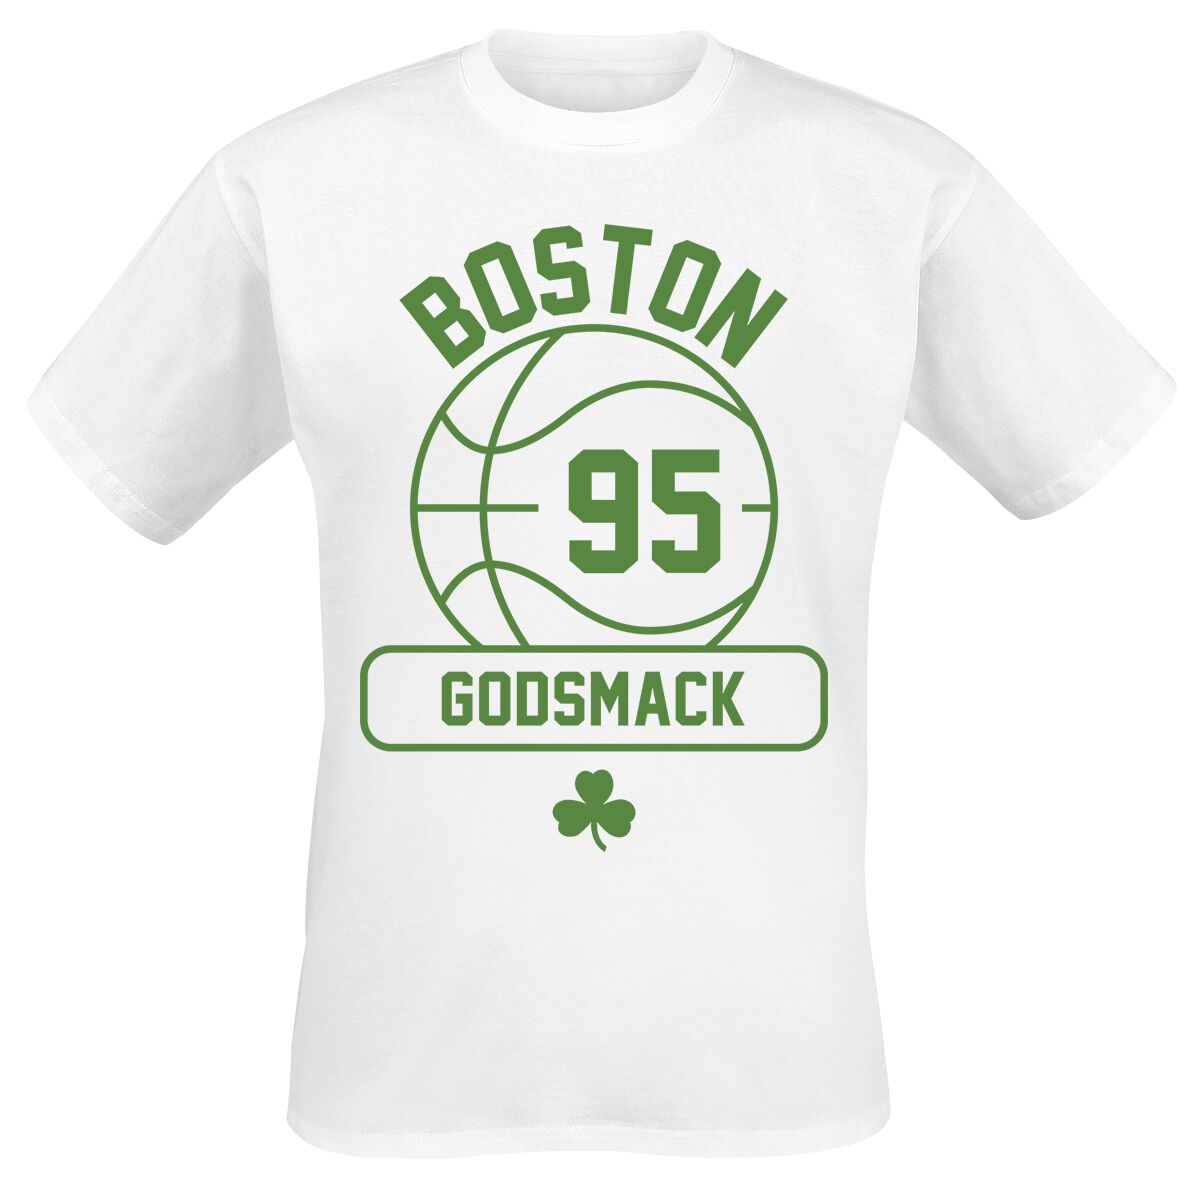 Godsmack T-Shirt - Retro Gym - S bis 3XL - für Männer - Größe XL - weiß  - Lizenziertes Merchandise!